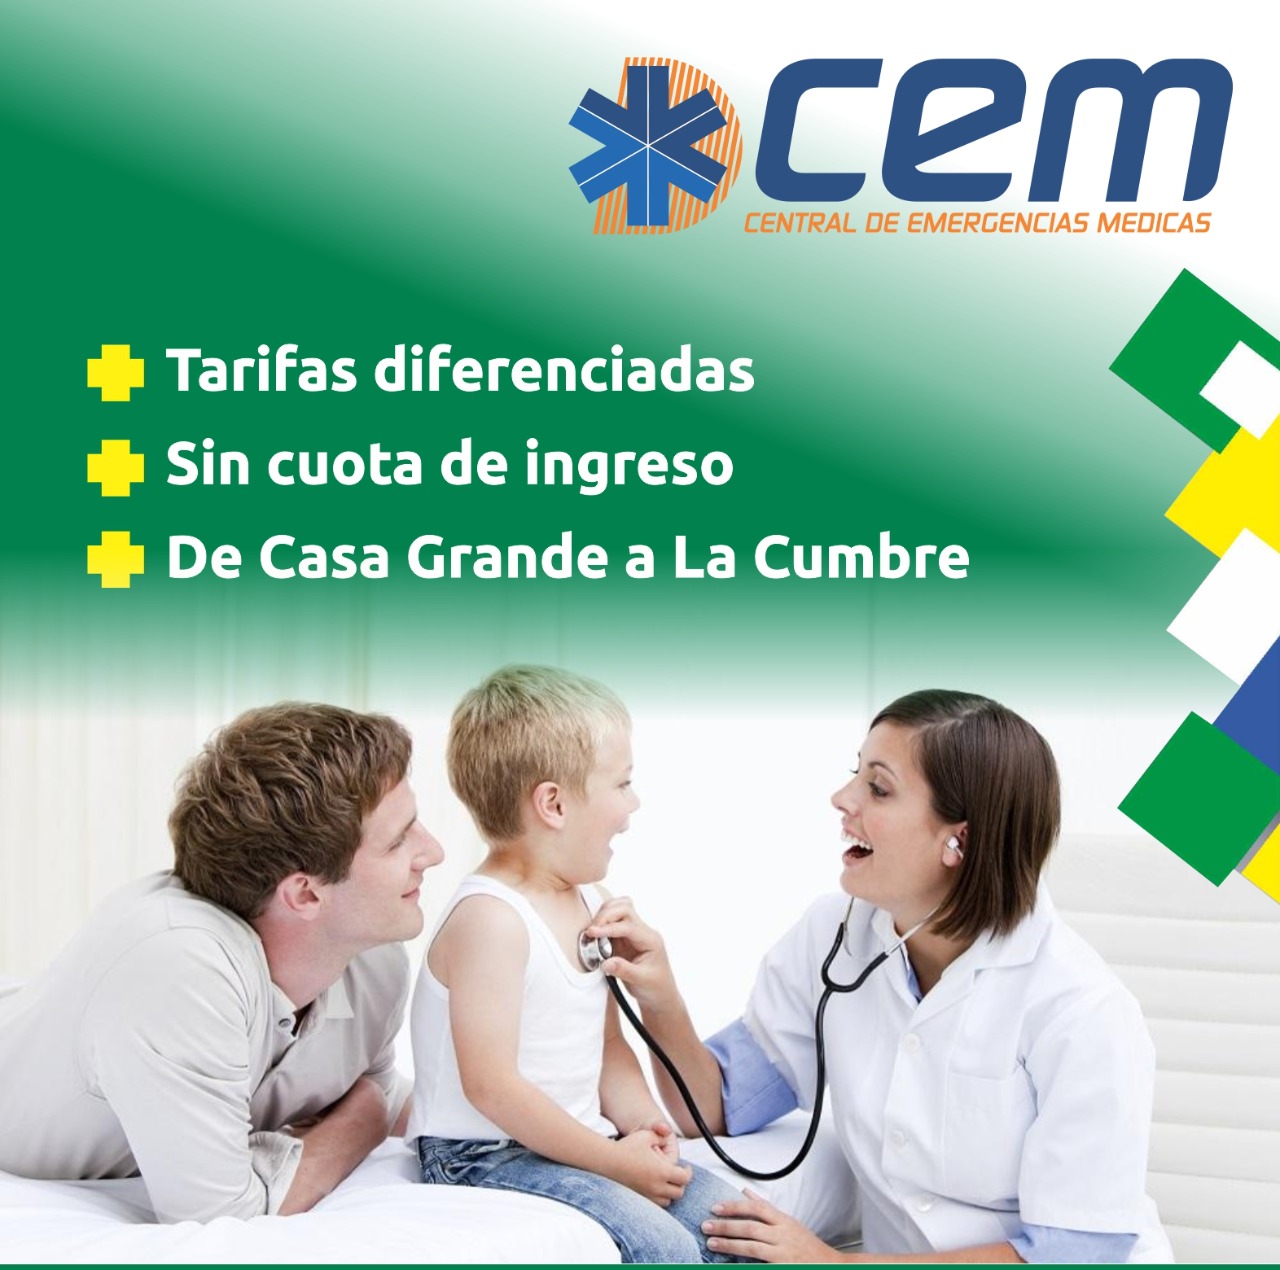 CEM - Central de Emergencias Médicas